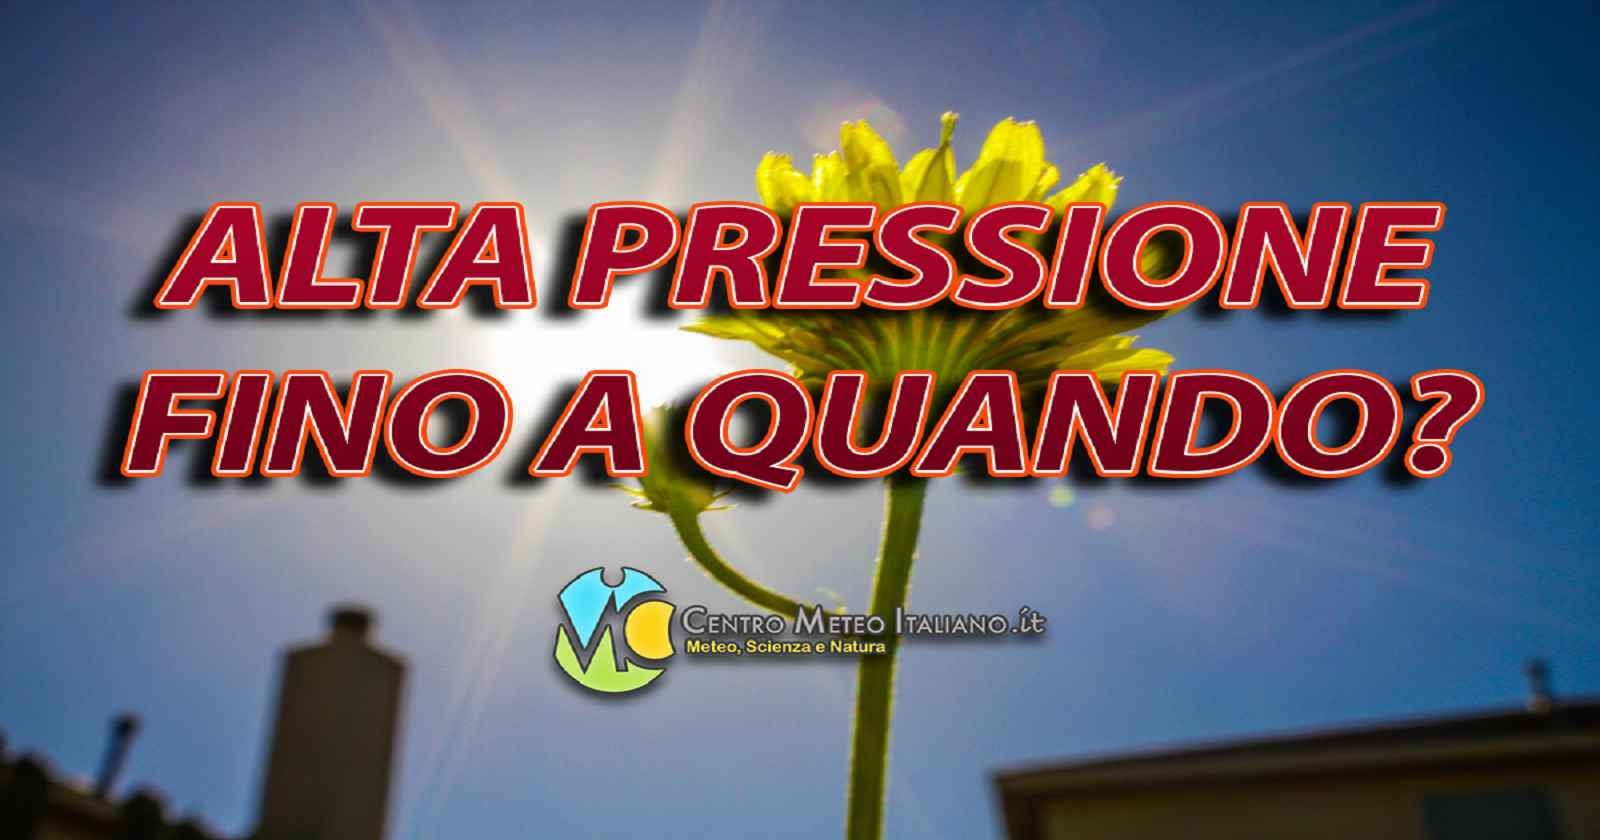 Meteo ITALIA: alta pressione almeno fino al weekend